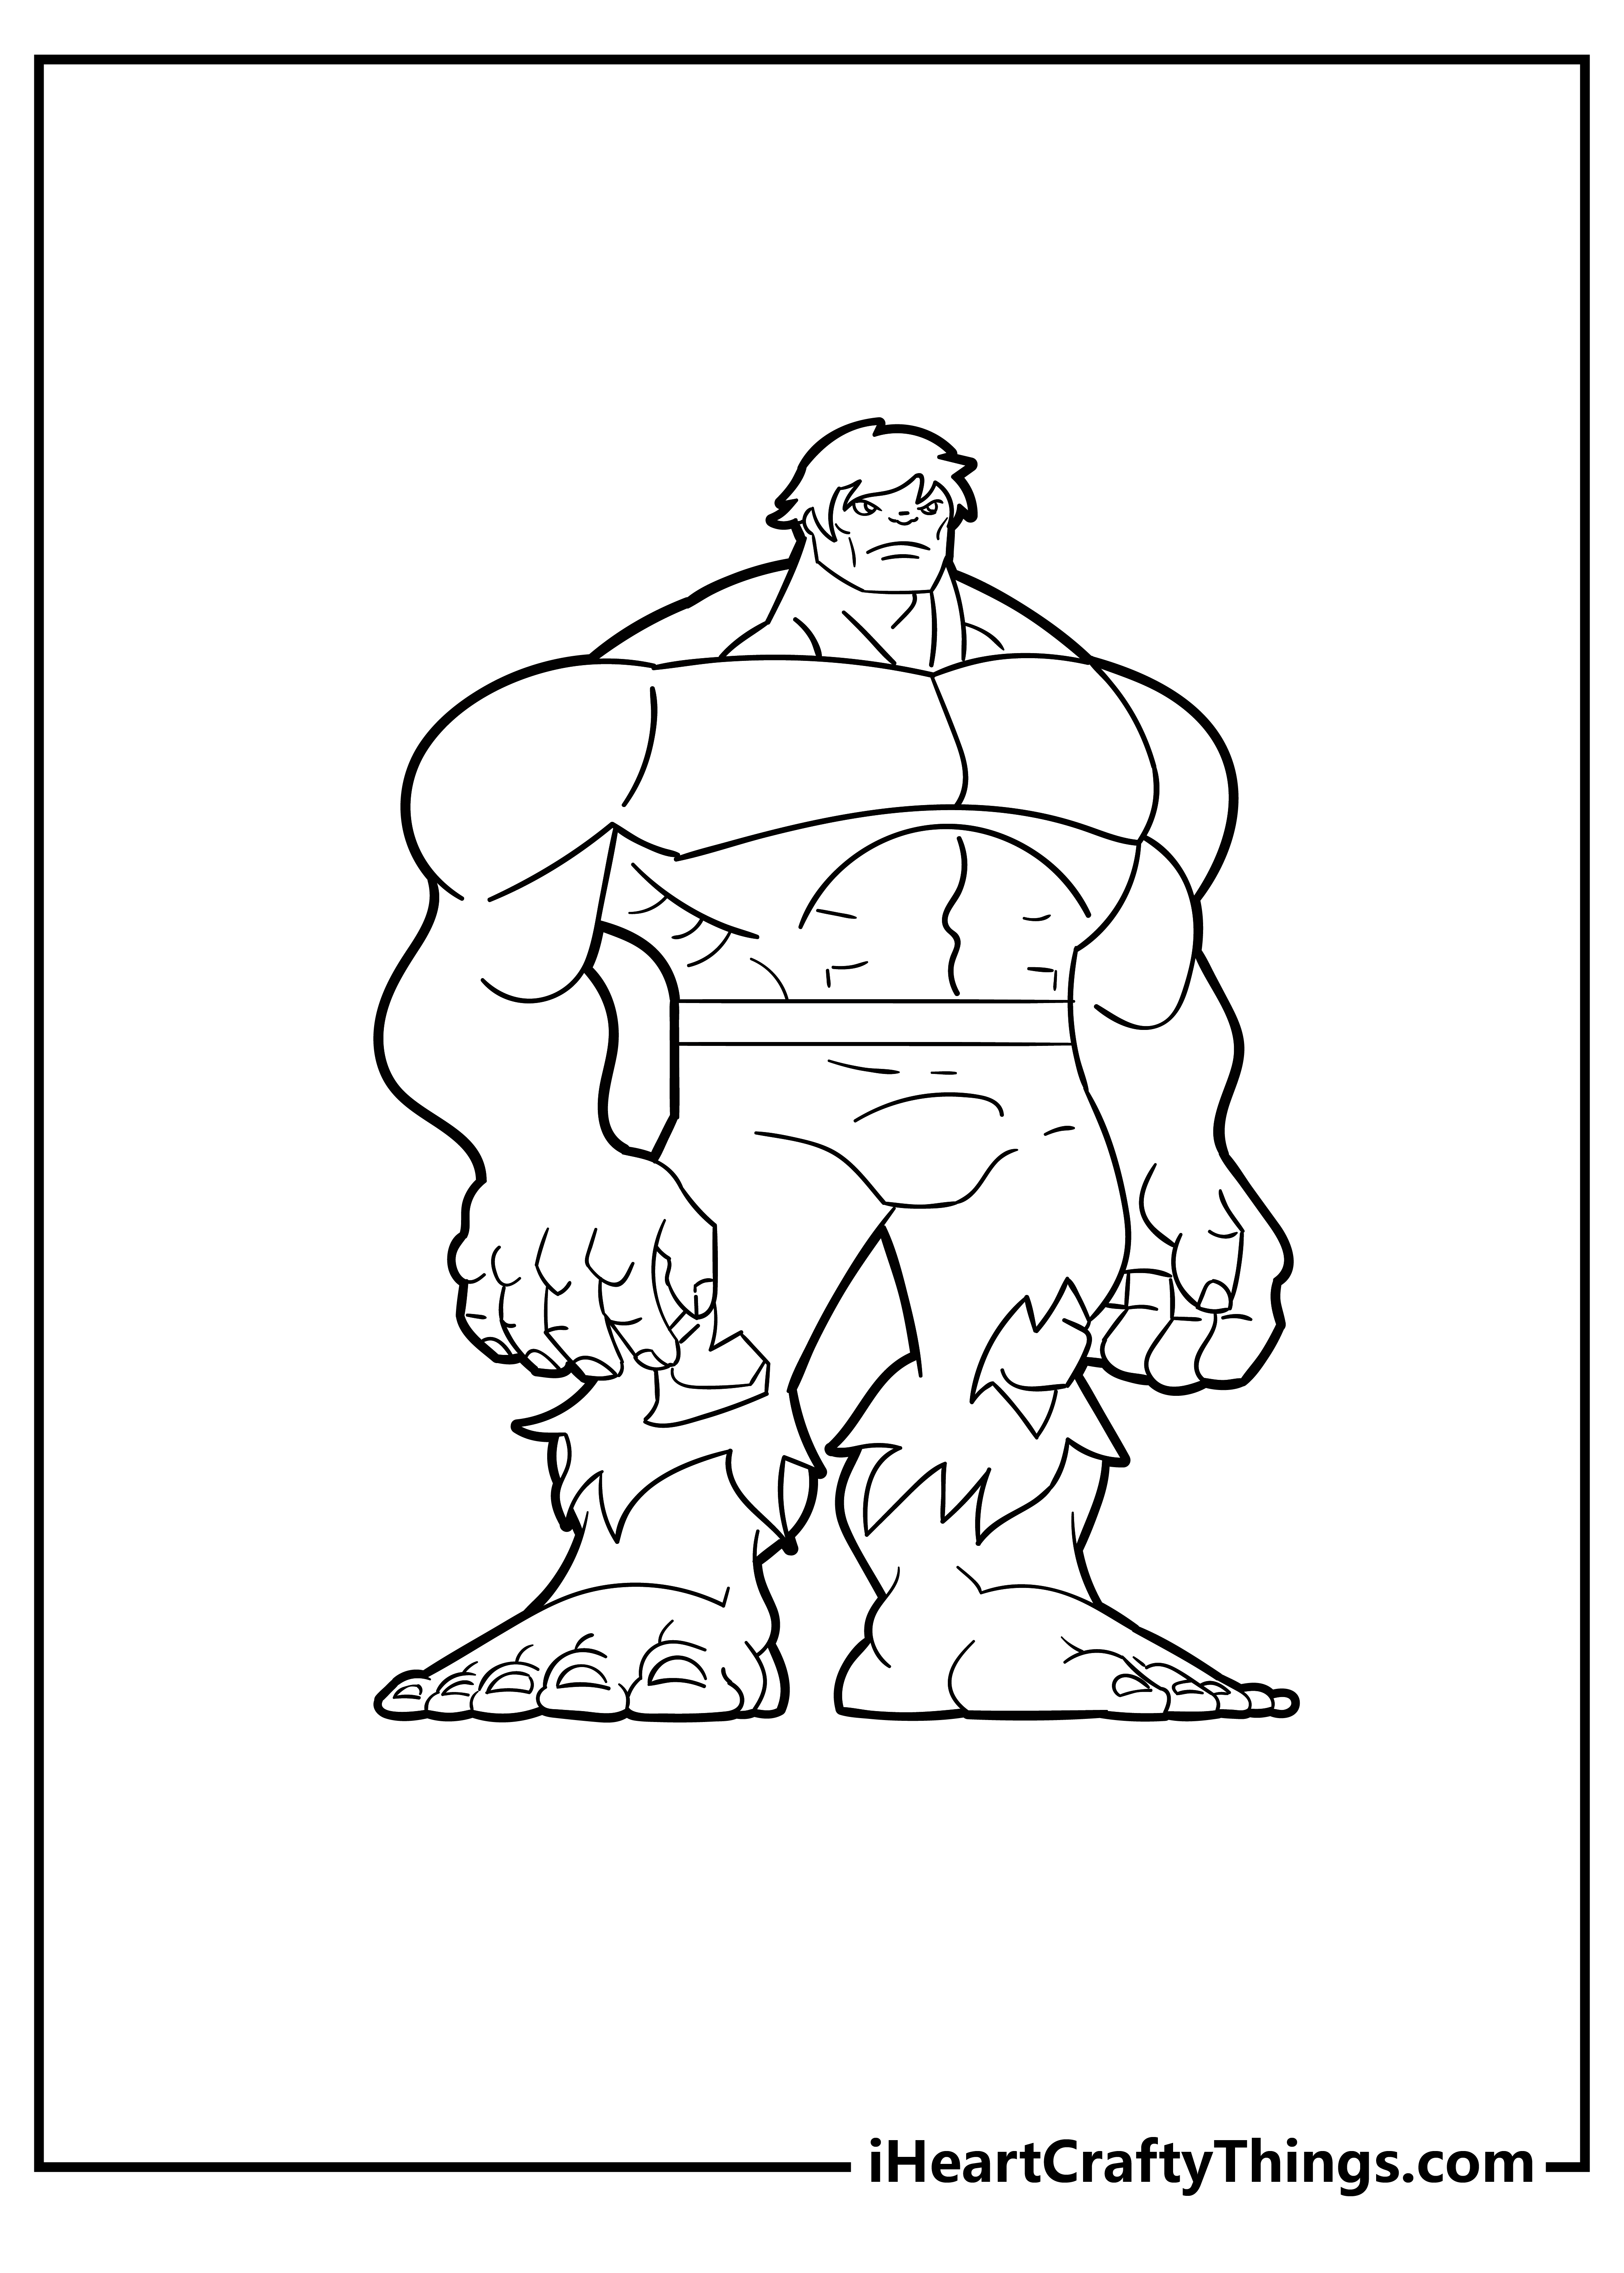 Hulk Coloring Pages free pdf download